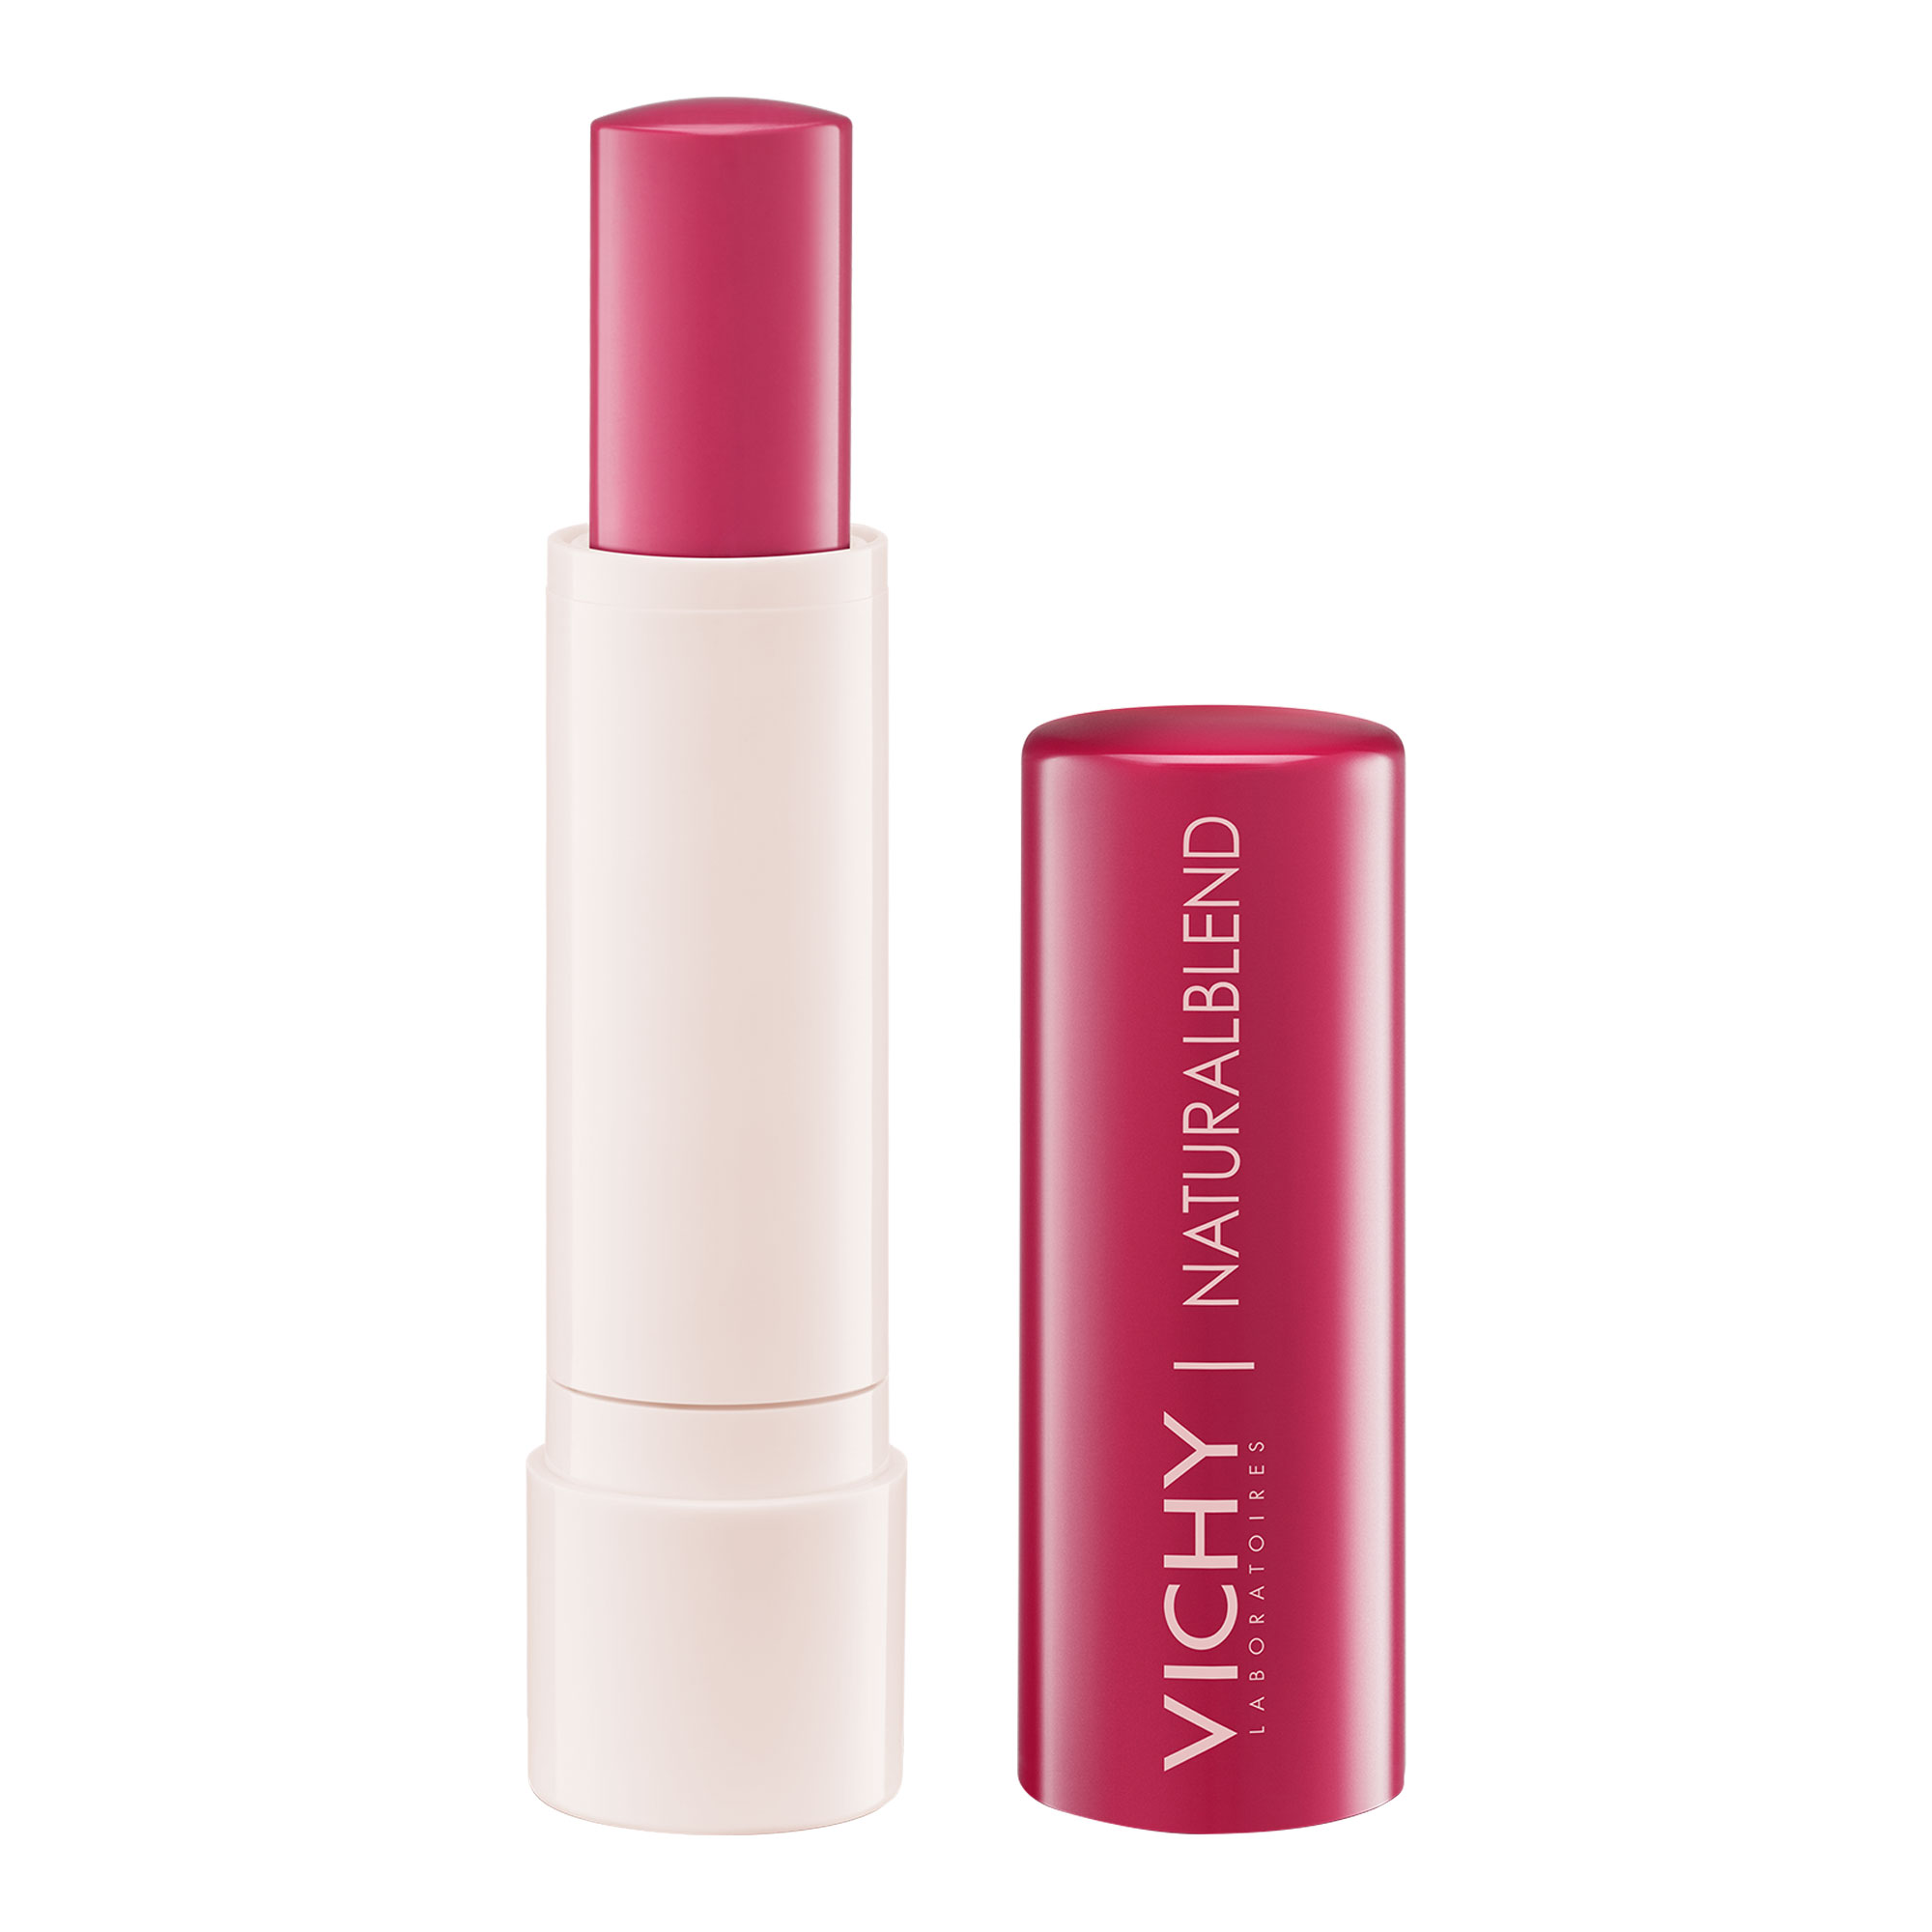 Feuchtigkeitsspendender Lippenbalsam. Farbe: pink.